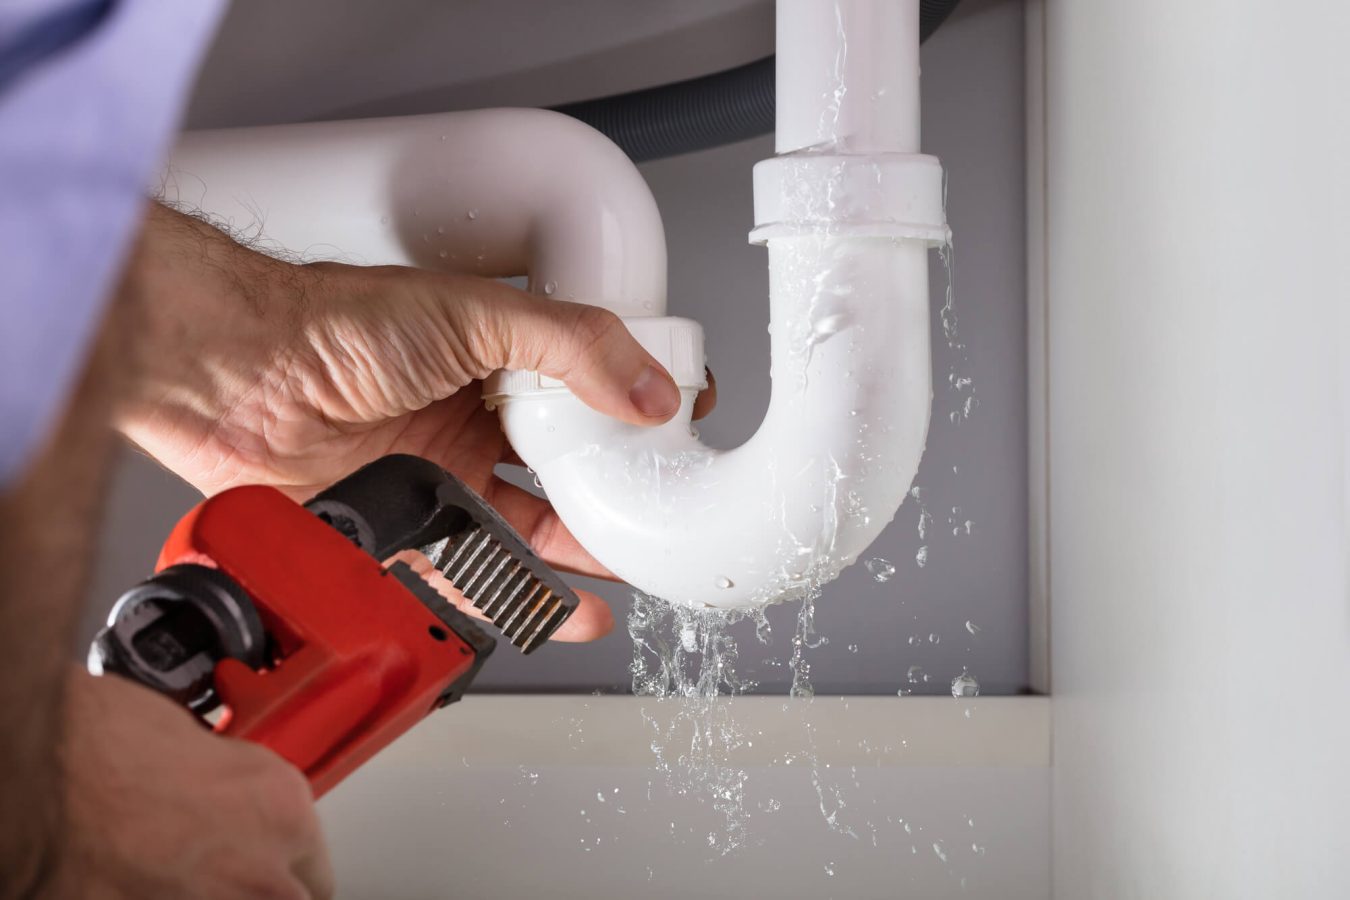 Repairing sink water leak during home bathroom renovation